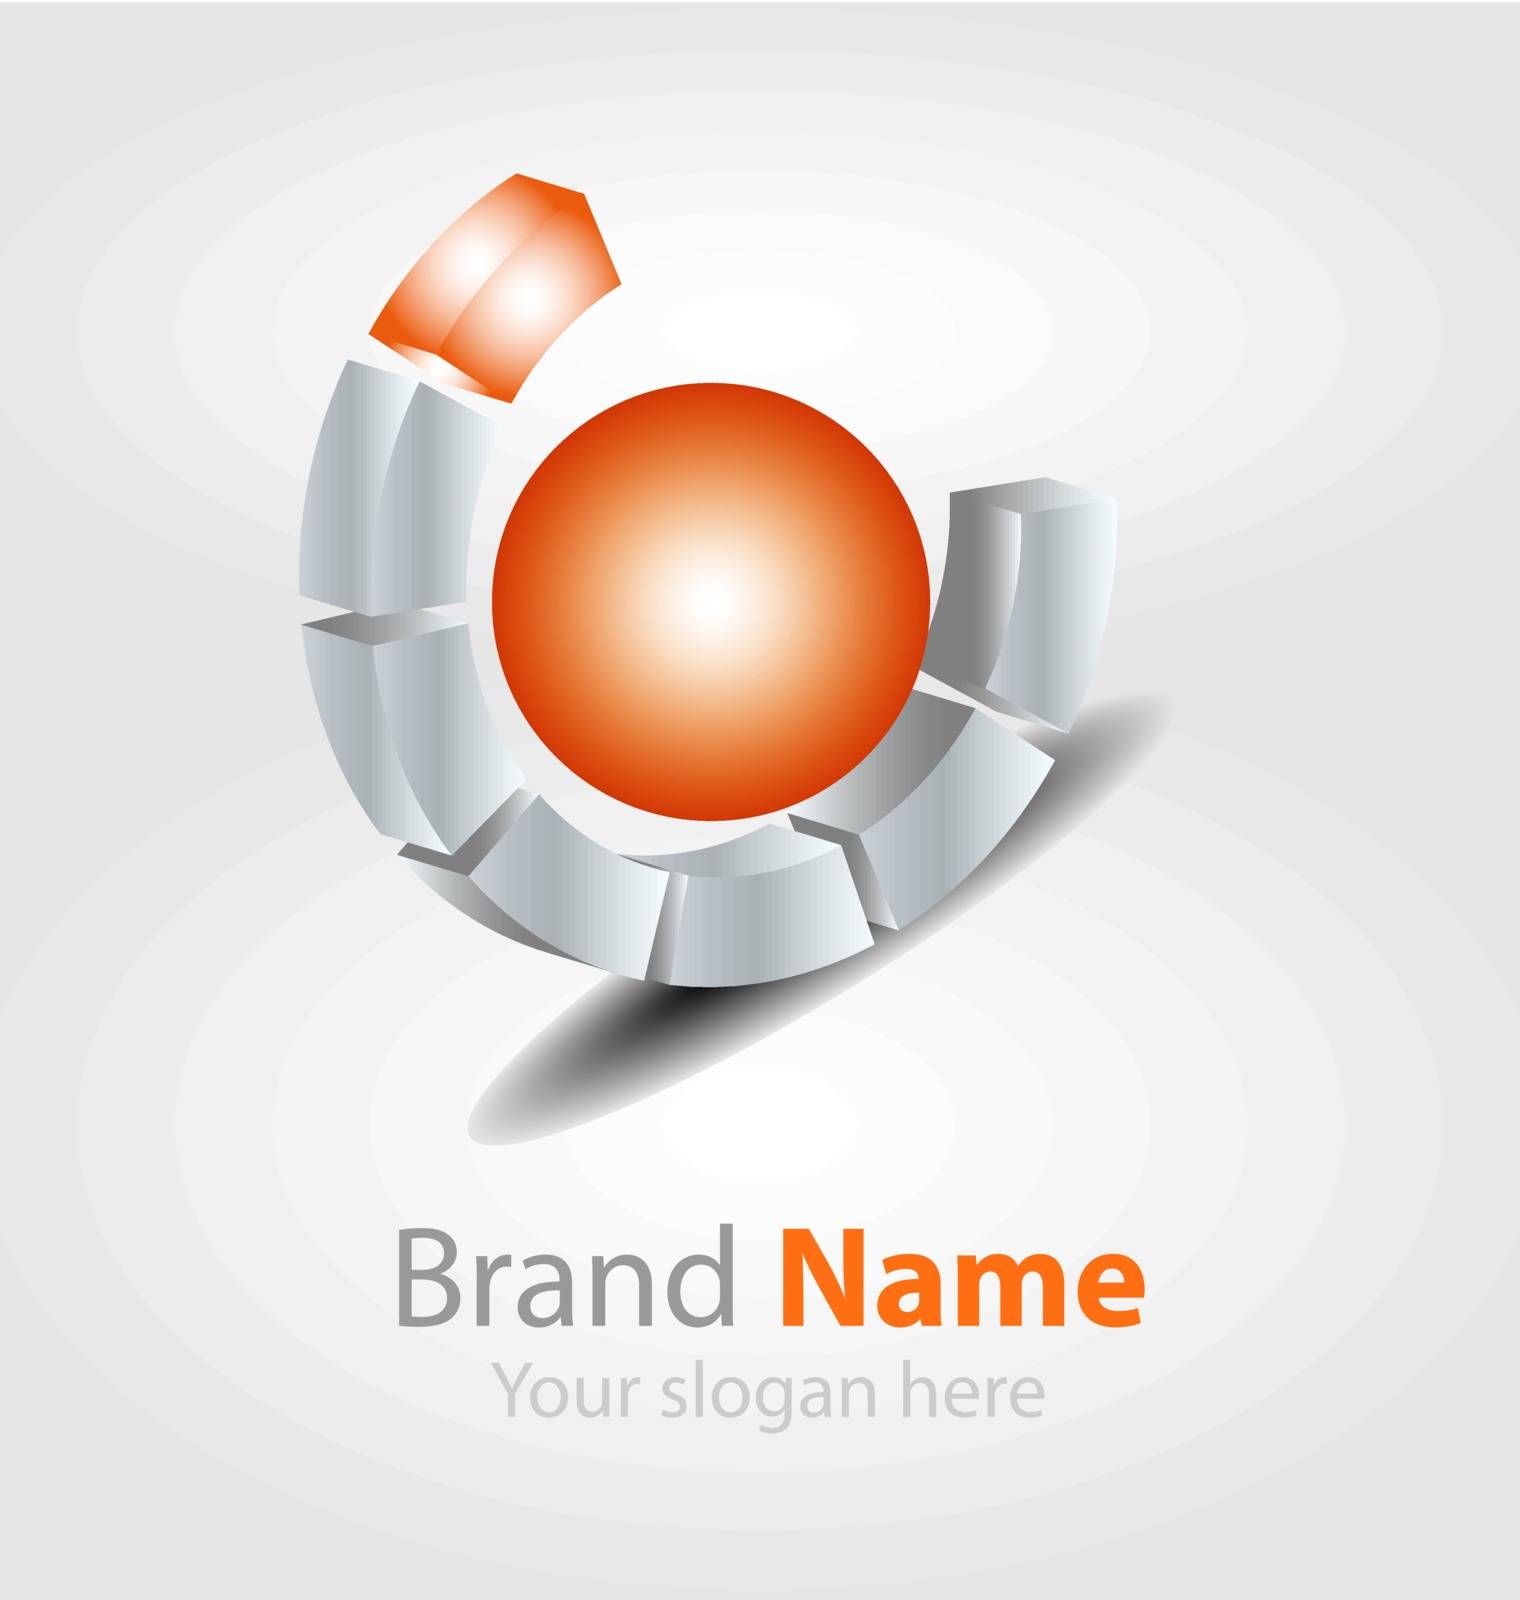 Originally designed vector brand logo